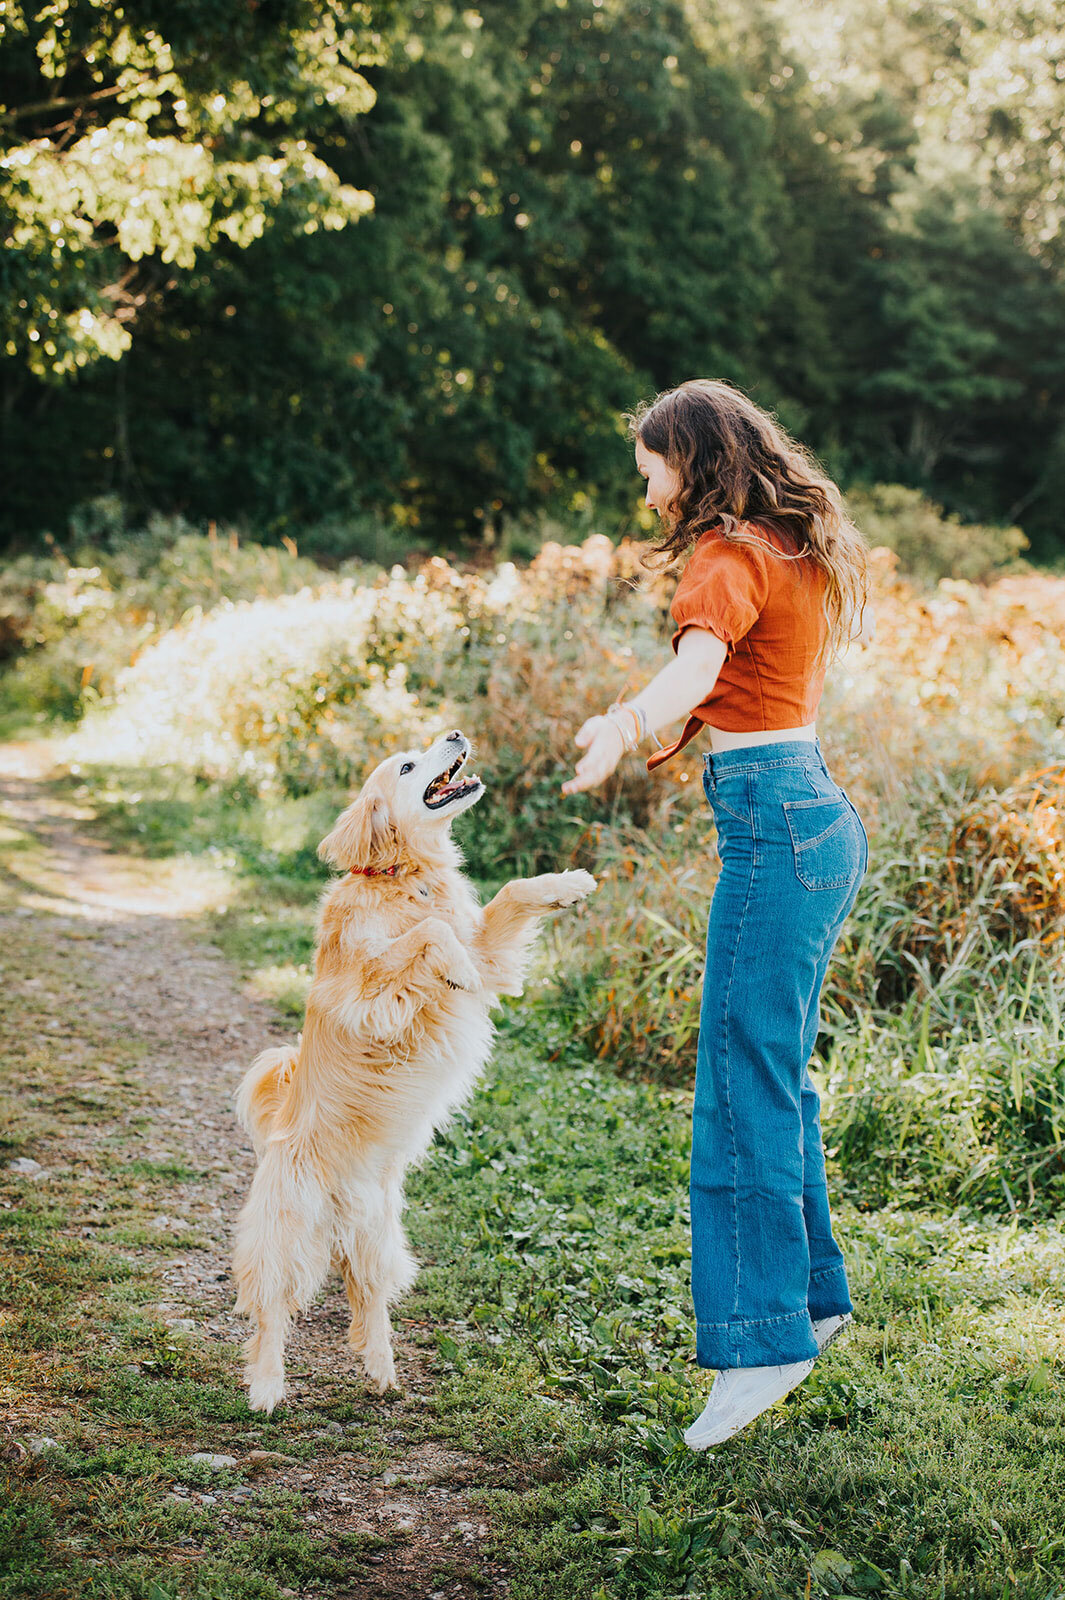 senior portrait with golden retriever dog in field vermont